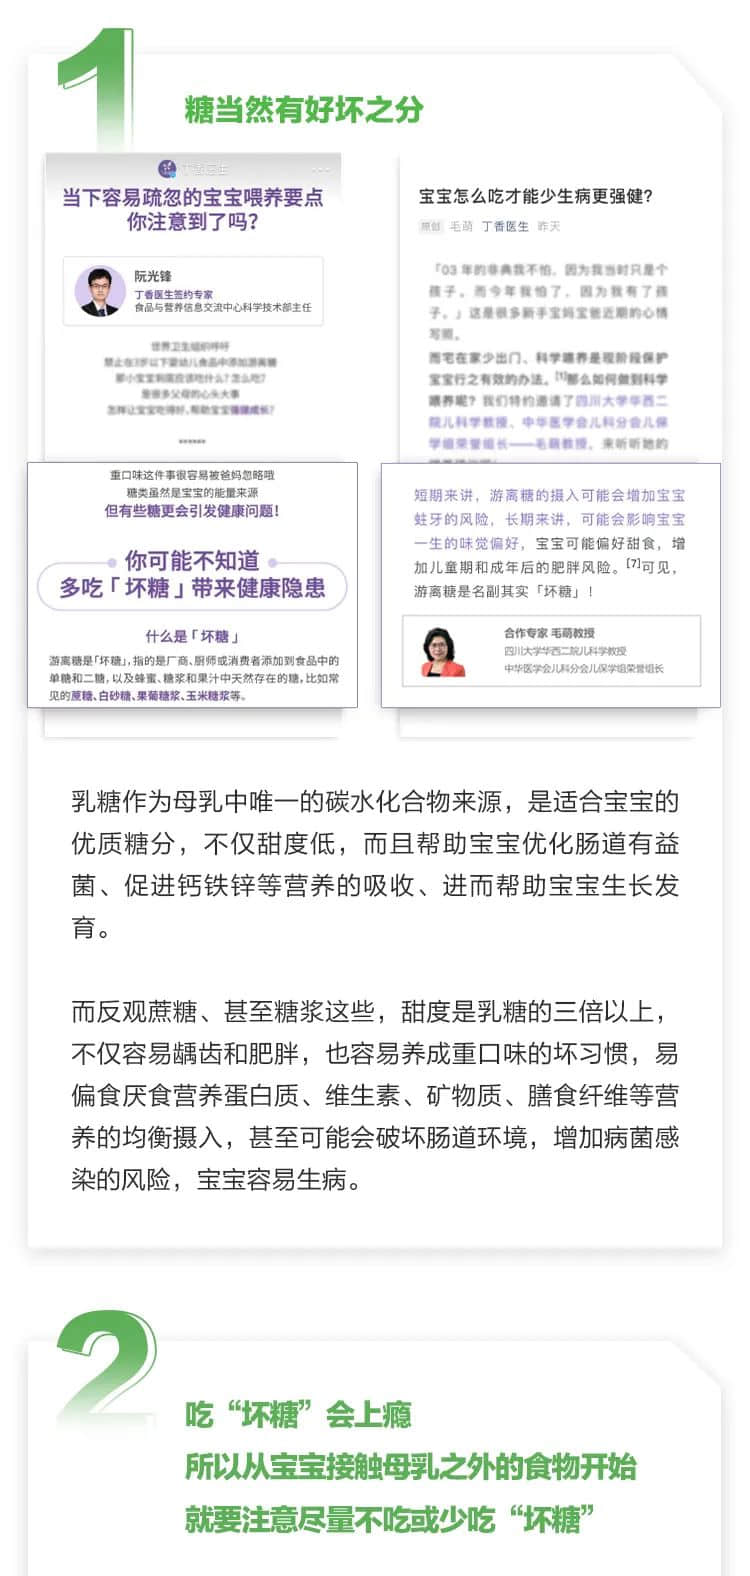 受万千中国妈妈欢迎的诺优能，成为首次加入CCTV亲子品牌计划的进口品牌